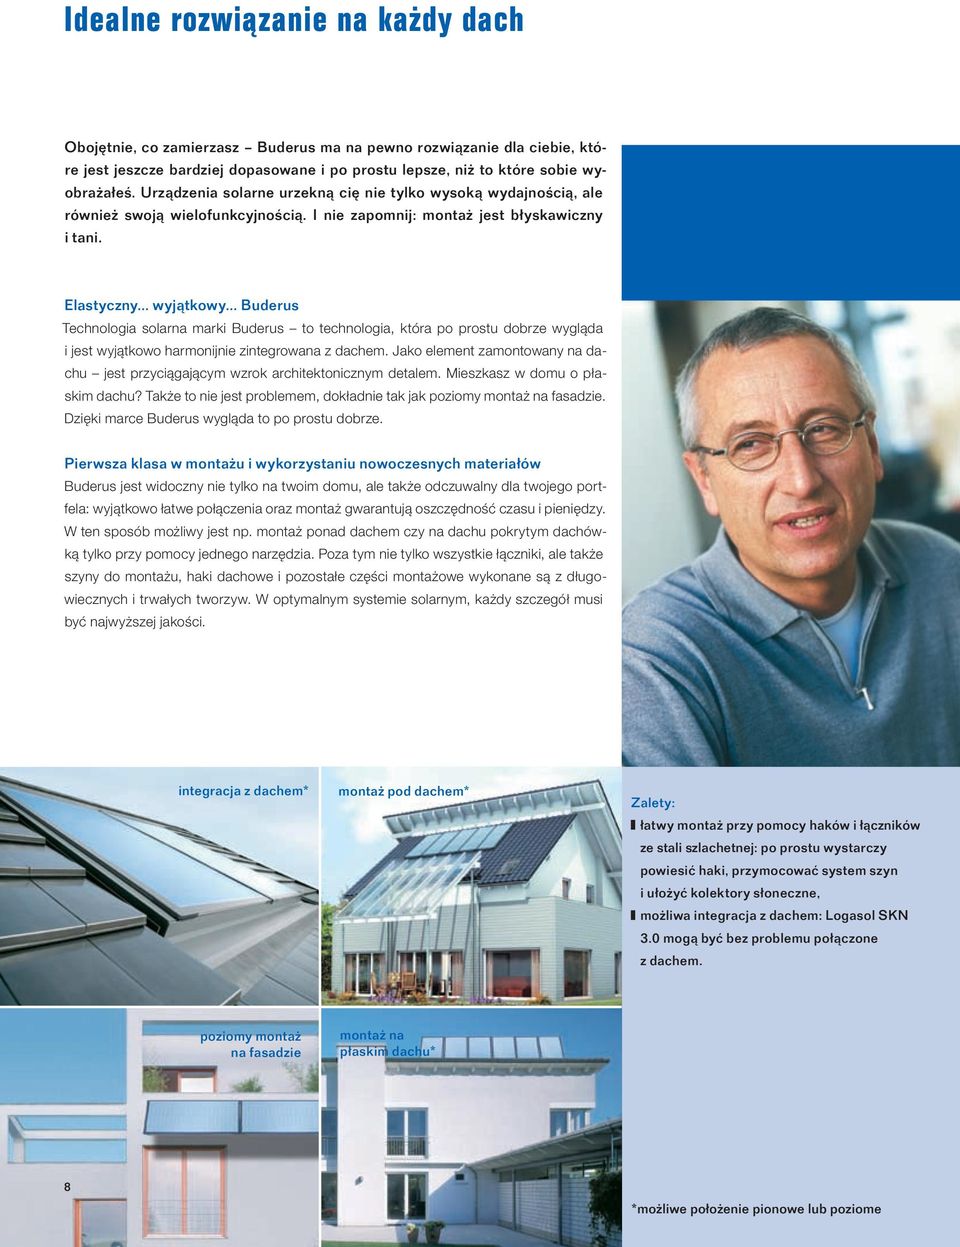 .. Buderus Technologia solarna marki Buderus to technologia, która po prostu dobrze wygląda i jest wyjątkowo harmonijnie zintegrowana z dachem.